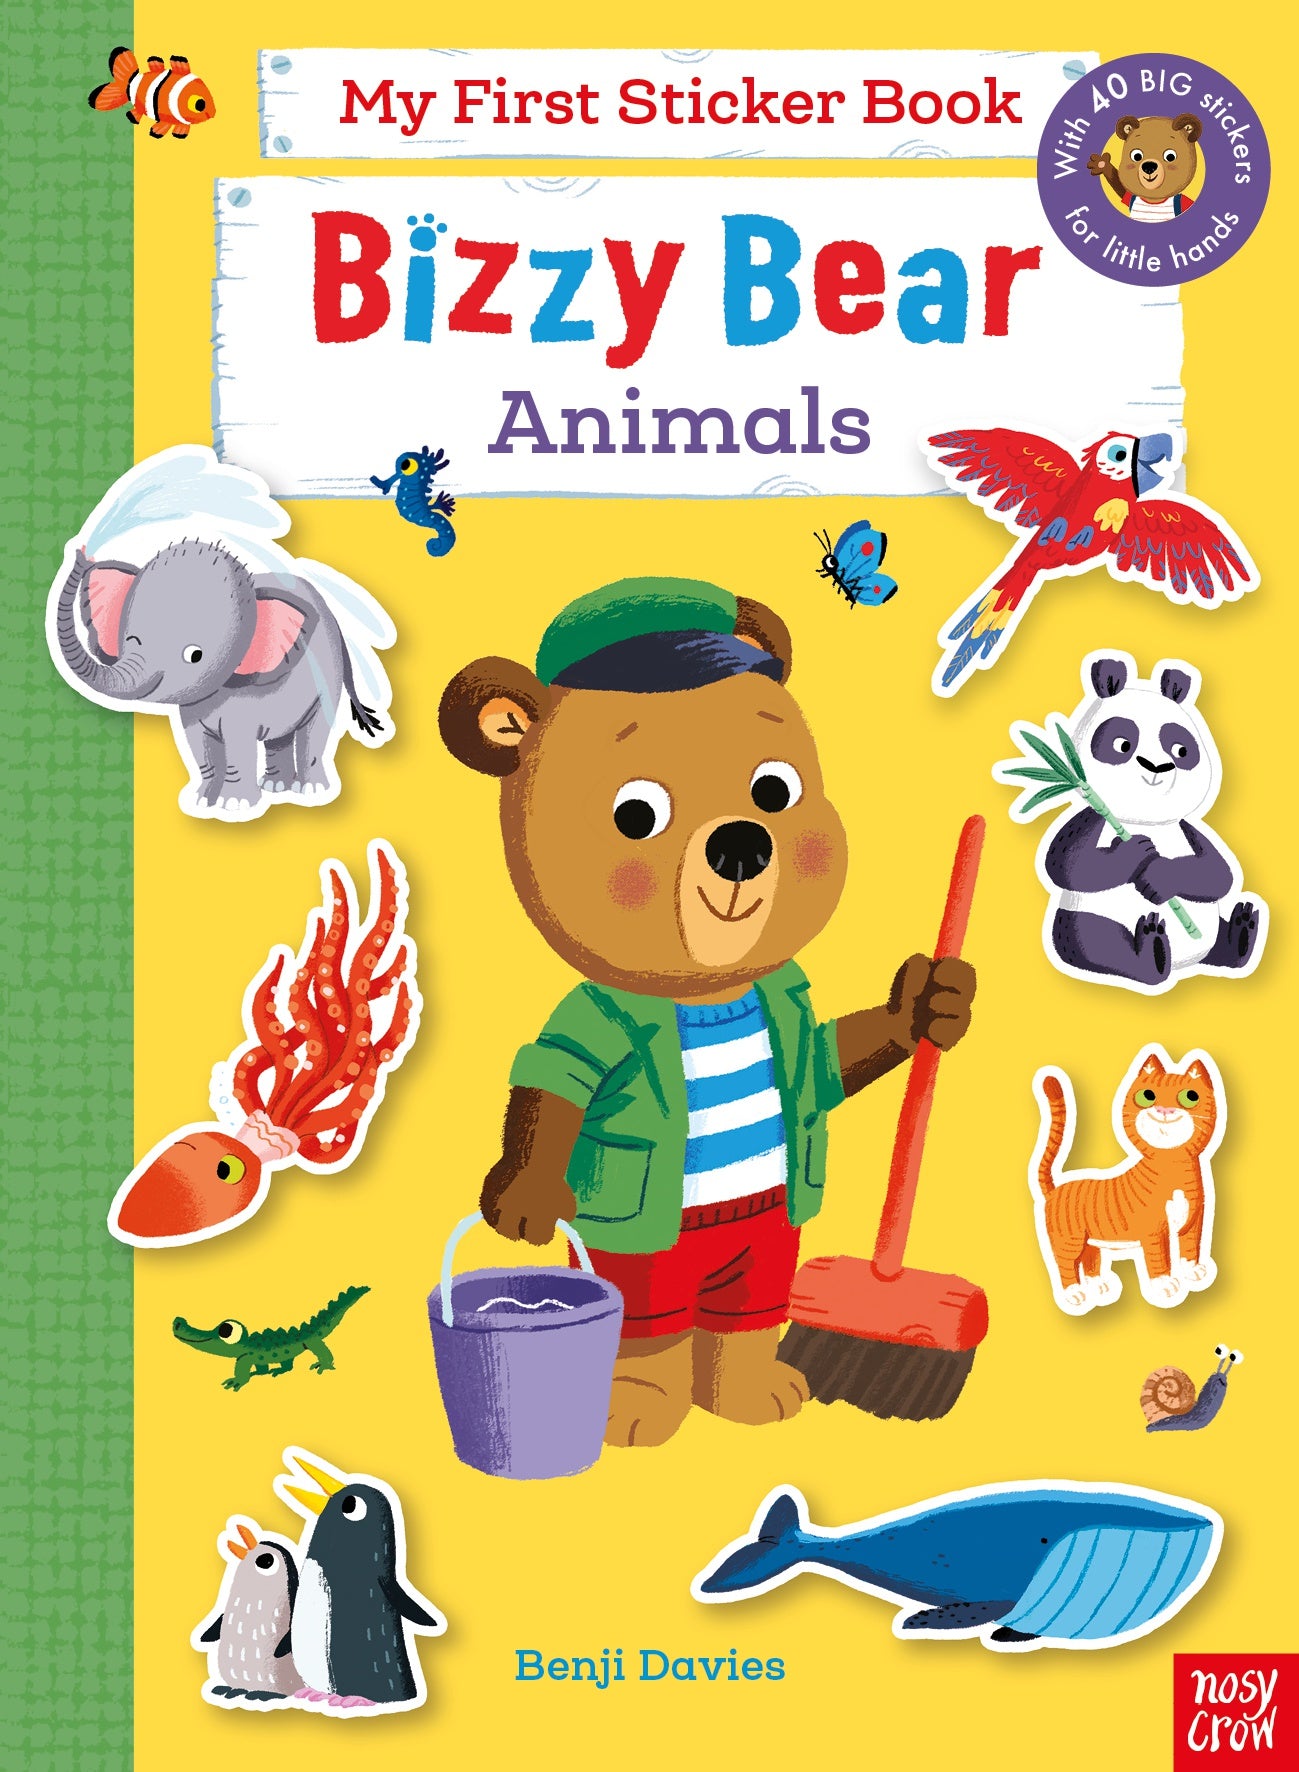 Bizzy Bear: My First Sticker Book - Animals